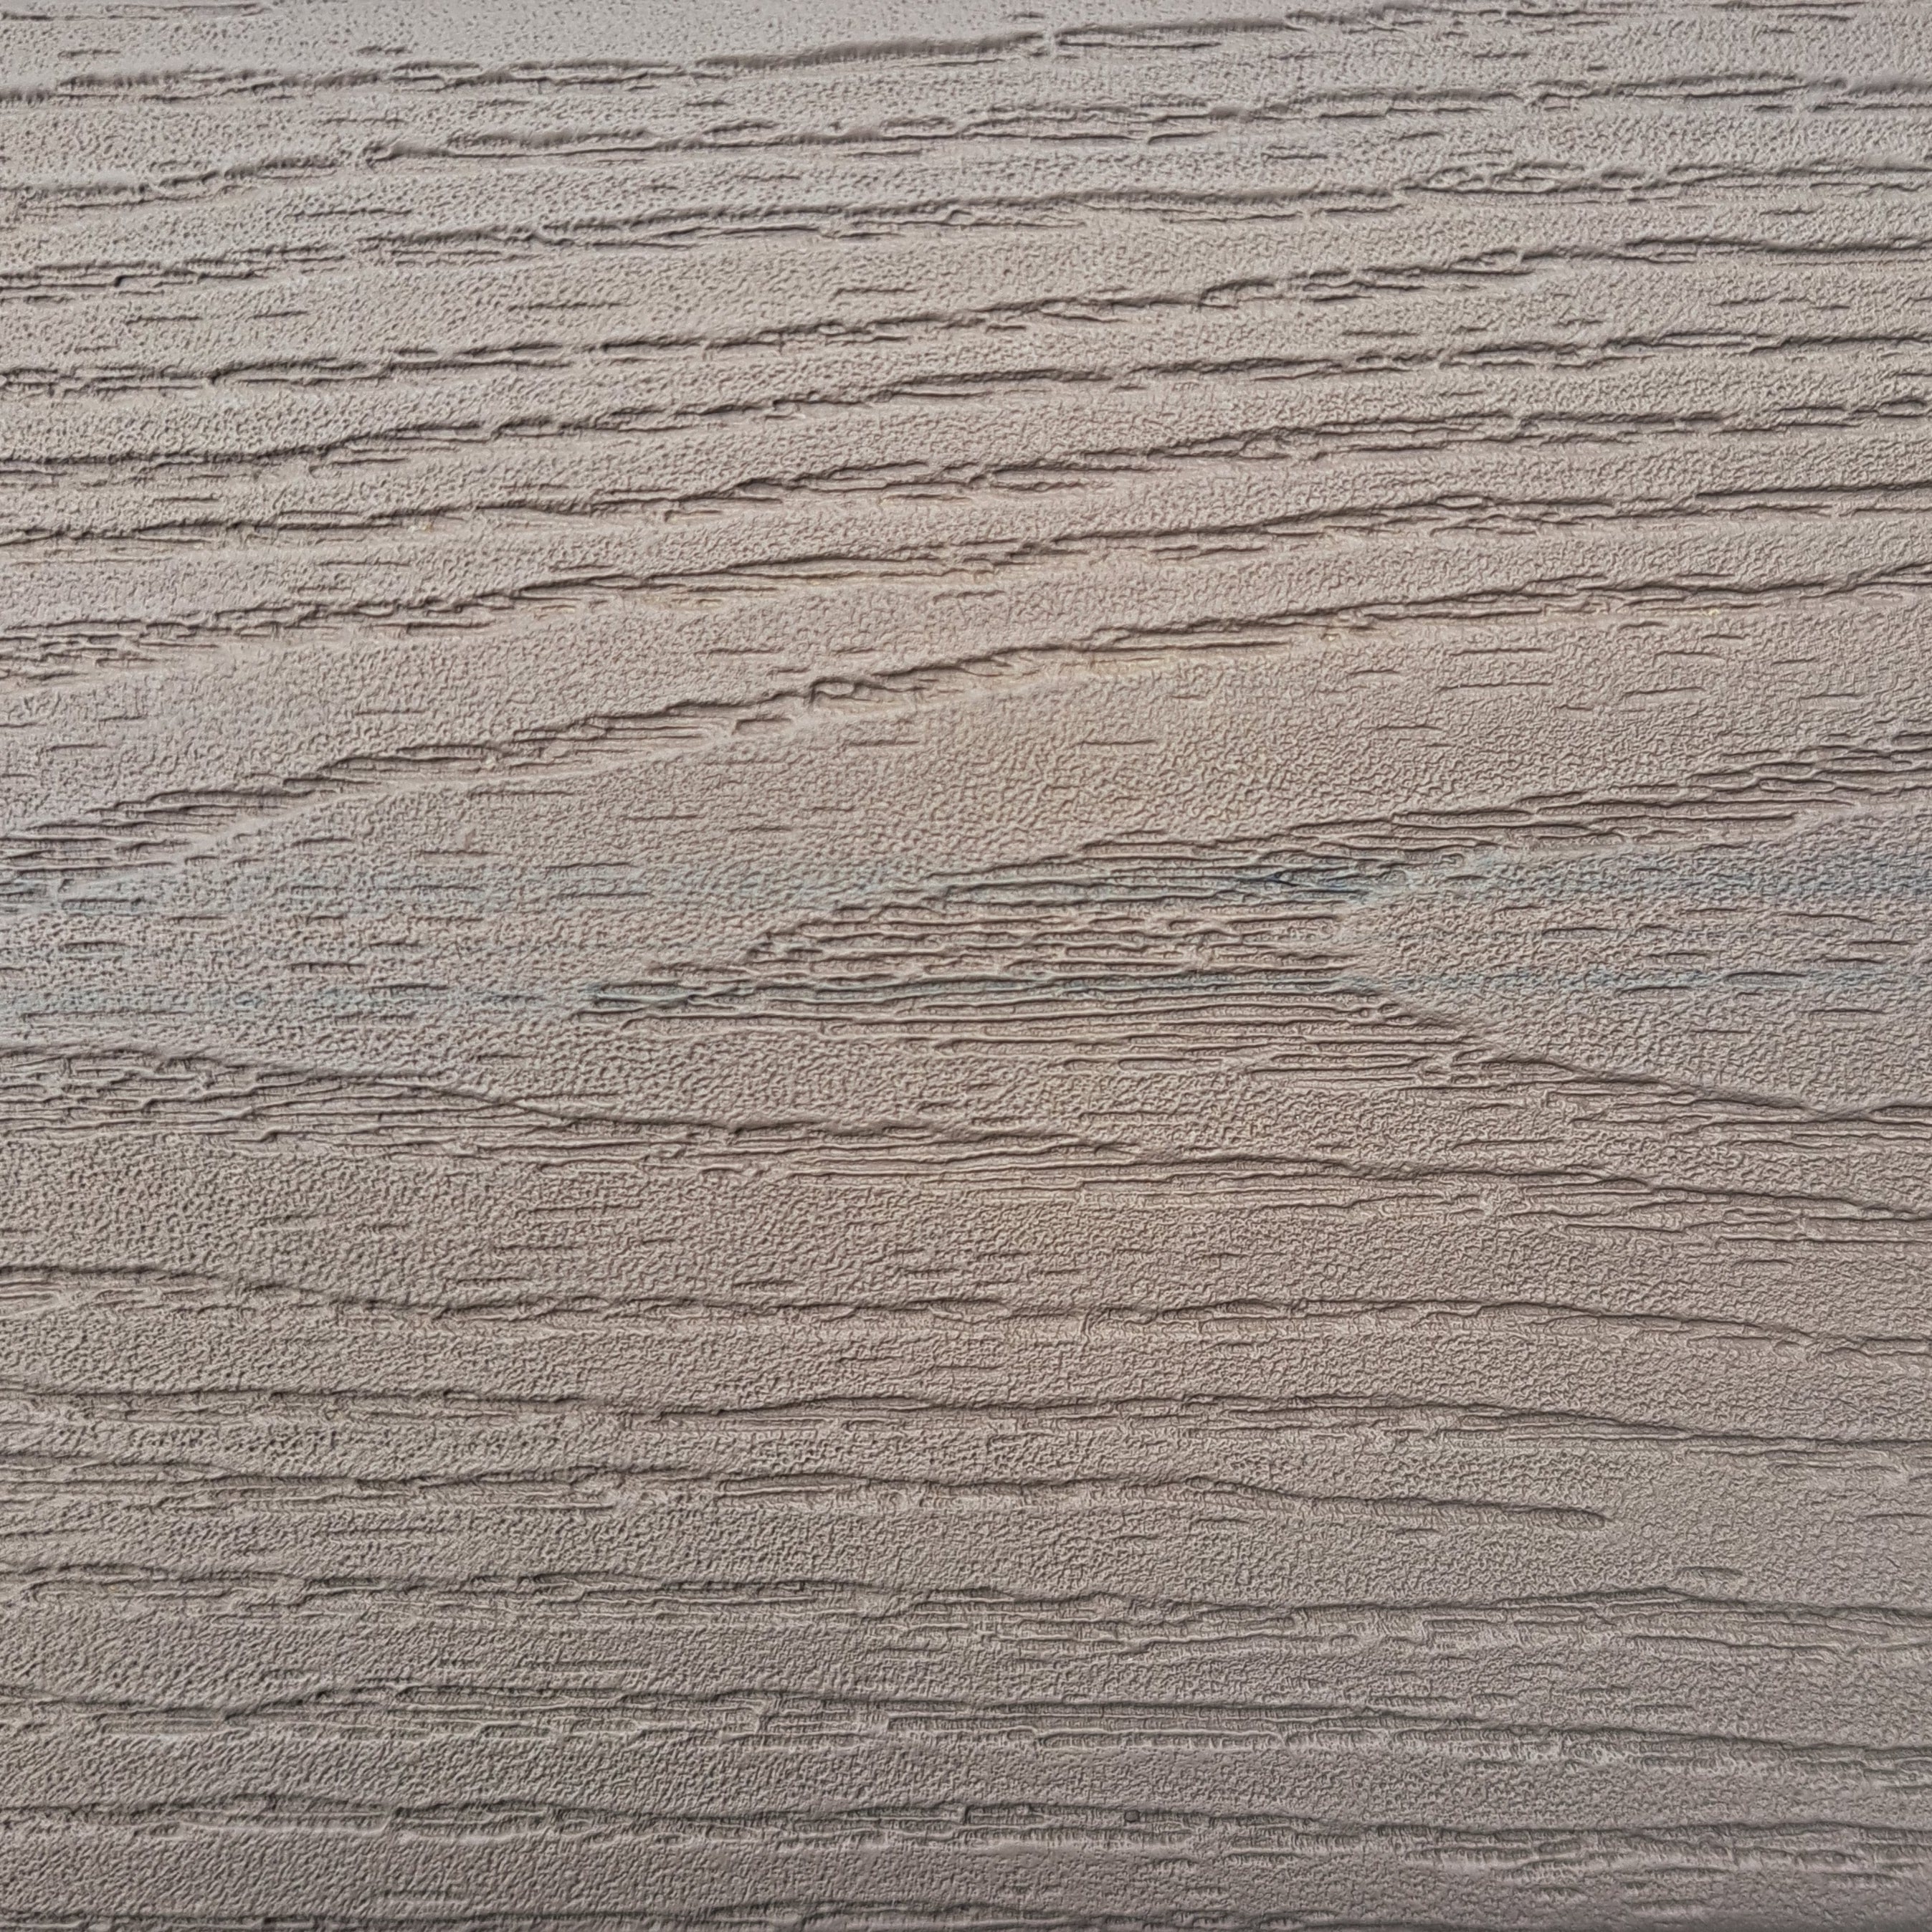 Texture of Fiberon Cabana Decking